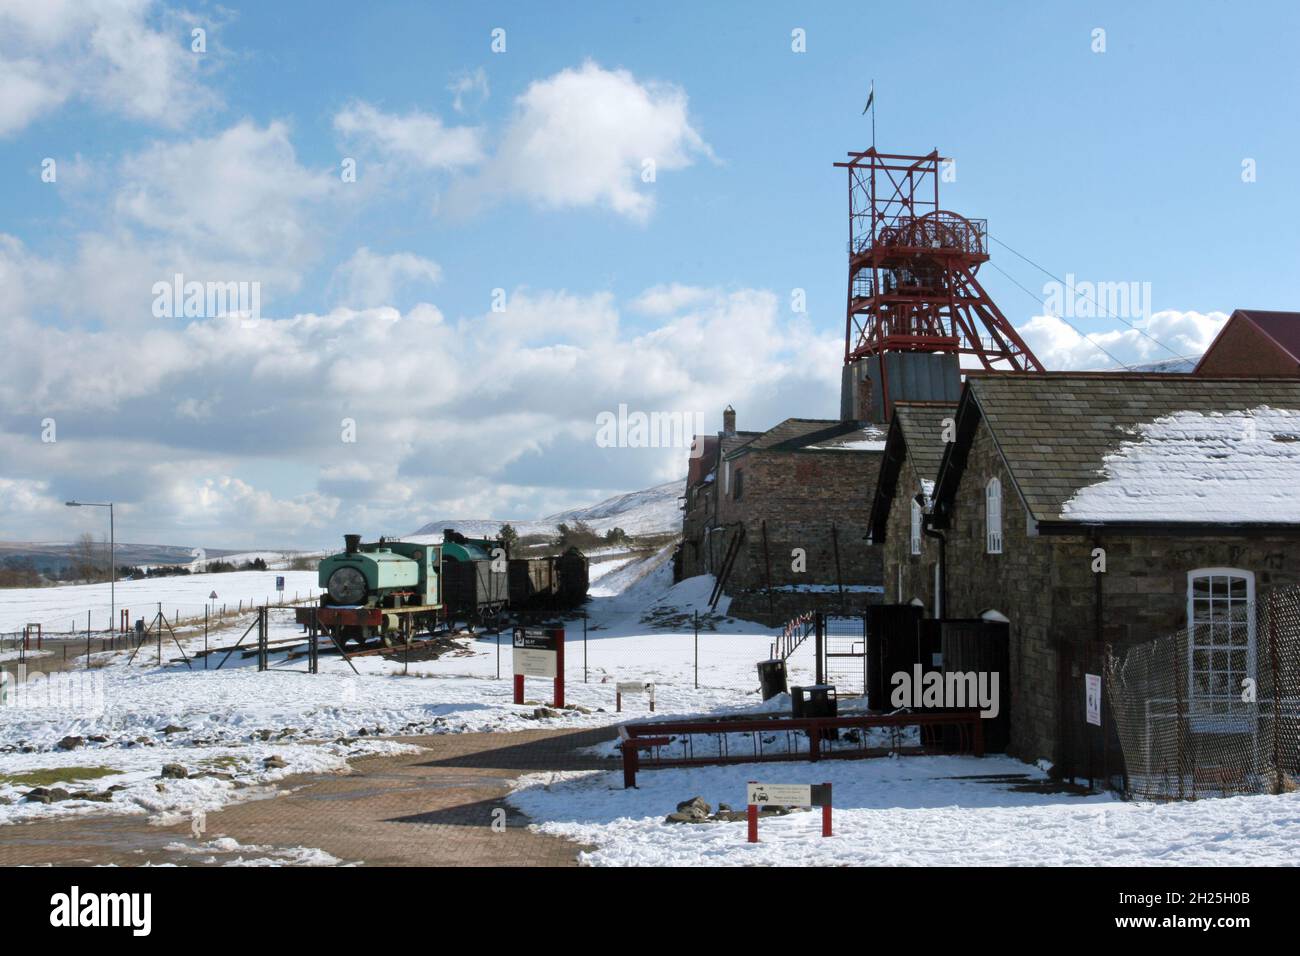 Big Pit, museo minerario treno a vapore e vagoni ingranaggi tortuosi edifici cielo blu soffice bianco nuvole inverno neve Blaenafon Galles Regno Unito spazio copia Foto Stock